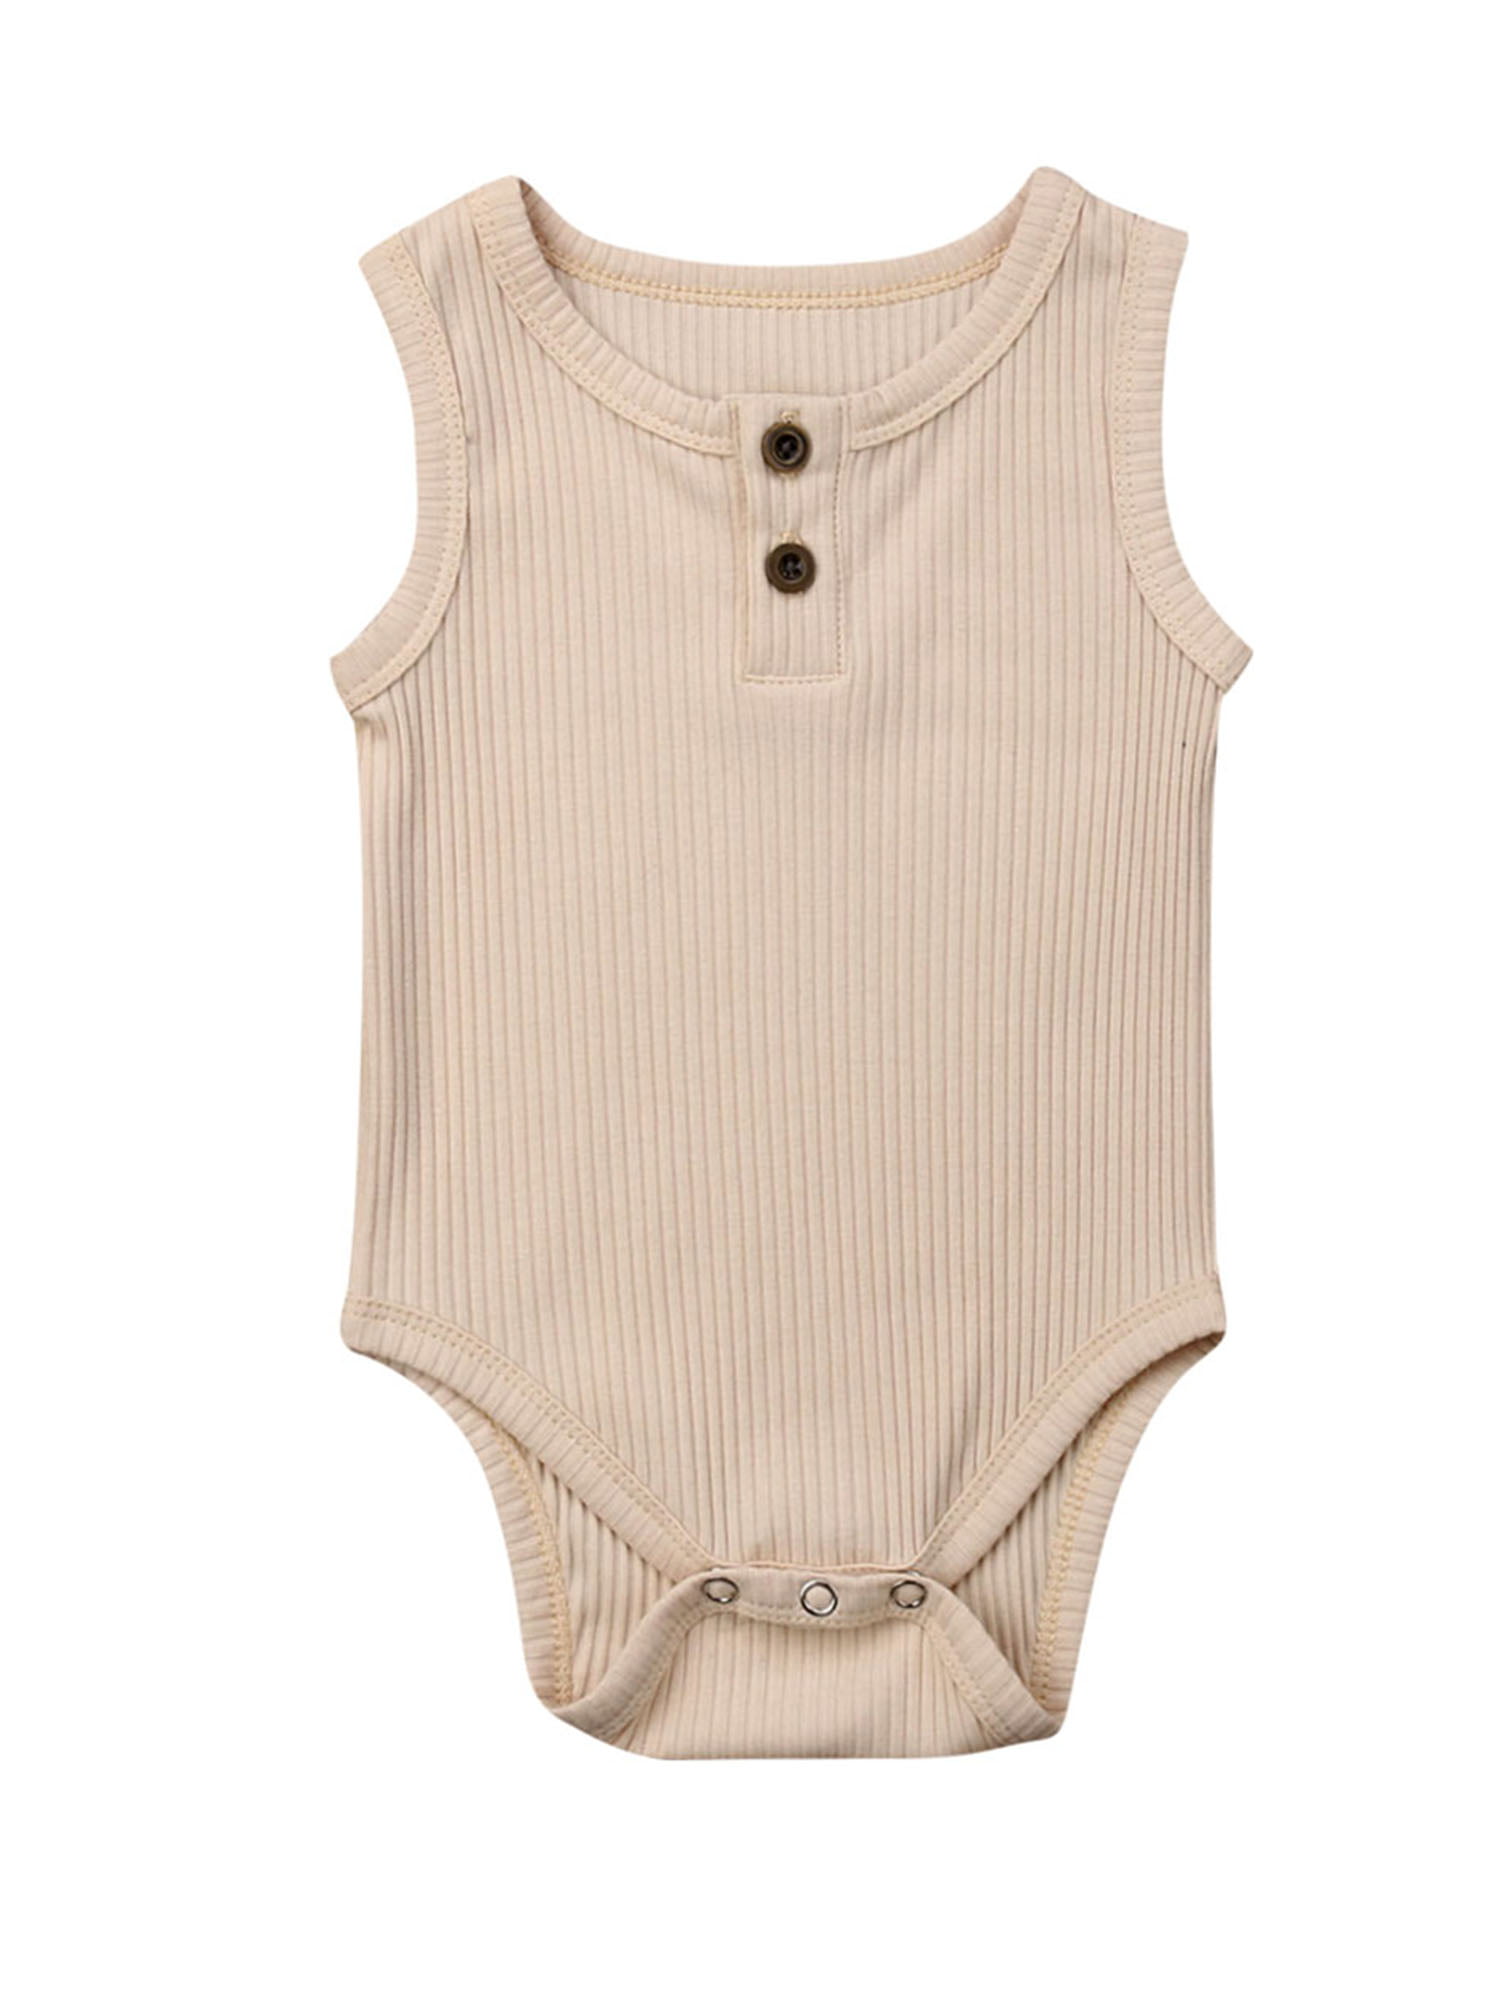 US Infant Baby Boy Girl Romper Bodysuit Jumpsuit Summer Clothes Outfits Sunsuit 